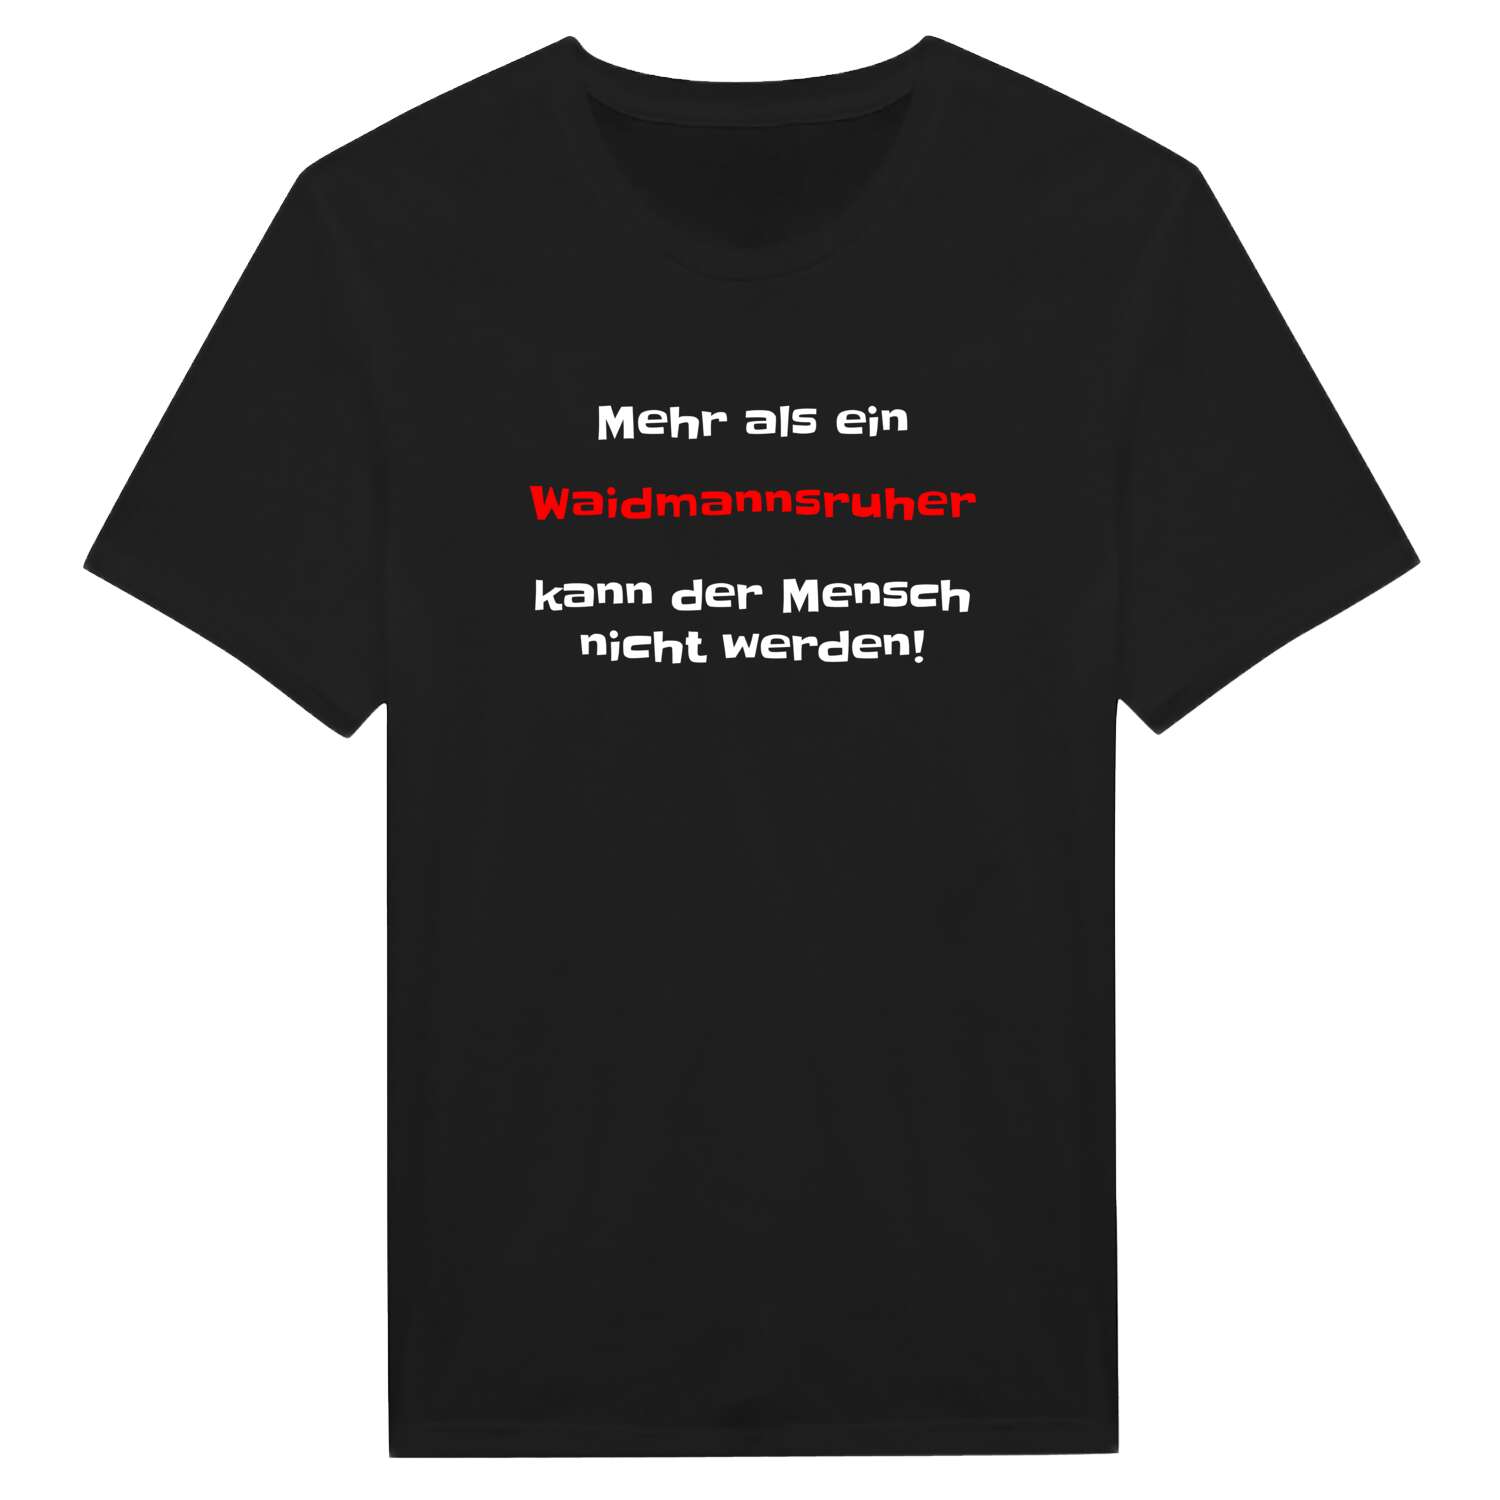 Waidmannsruh T-Shirt »Mehr als ein«